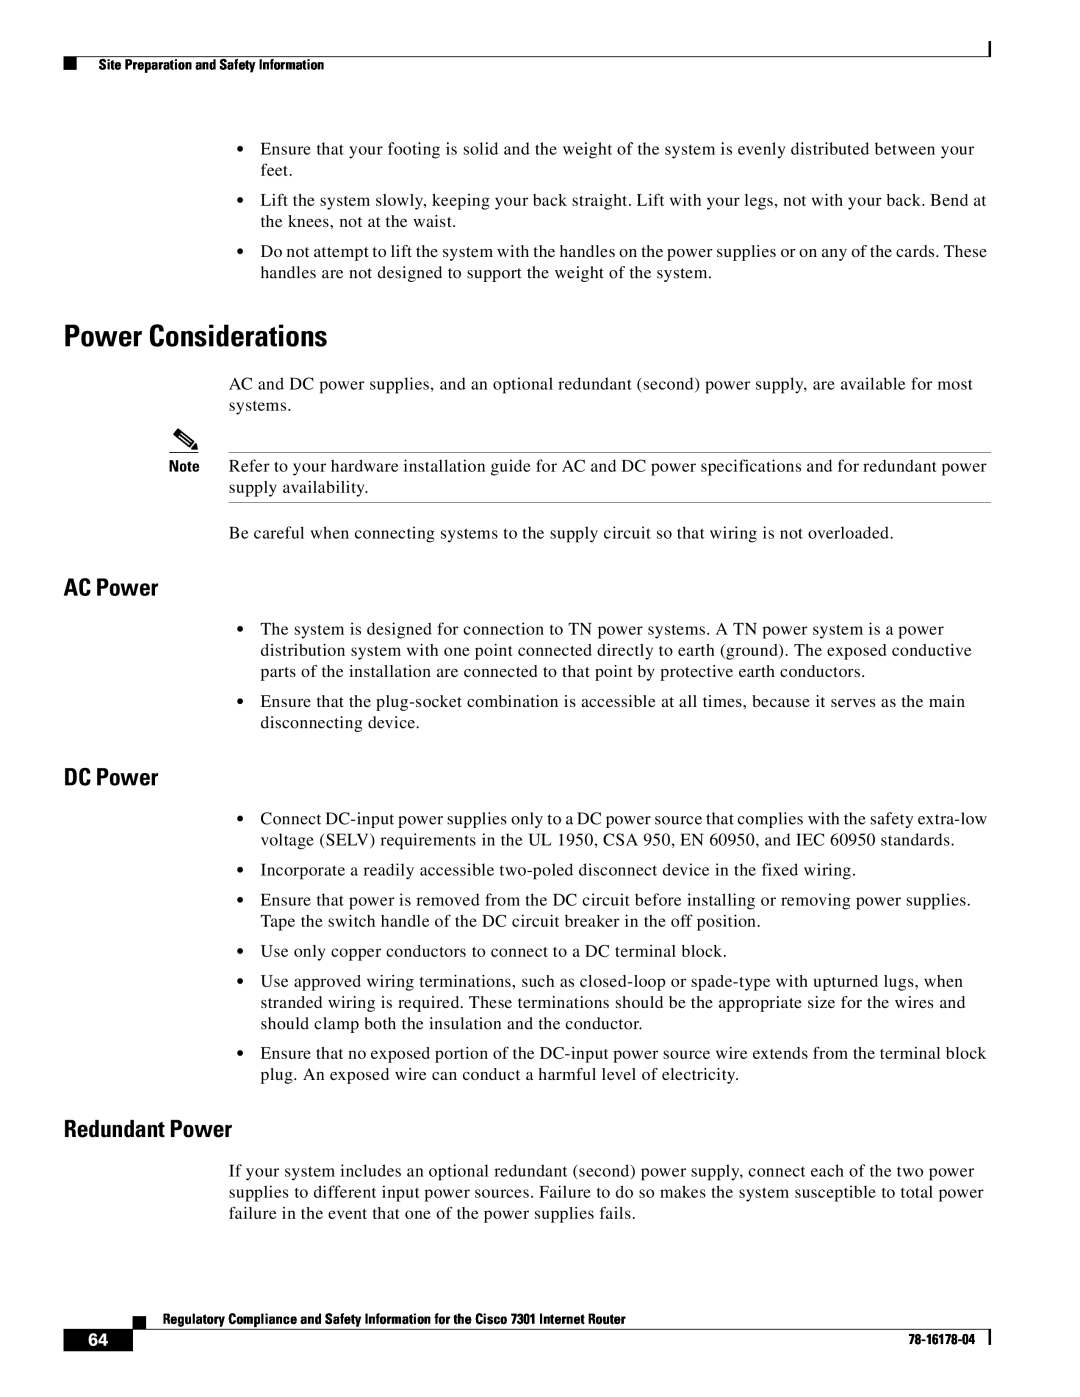 Cisco Systems CISCO7301 manual Power Considerations, AC Power, DC Power, Redundant Power 